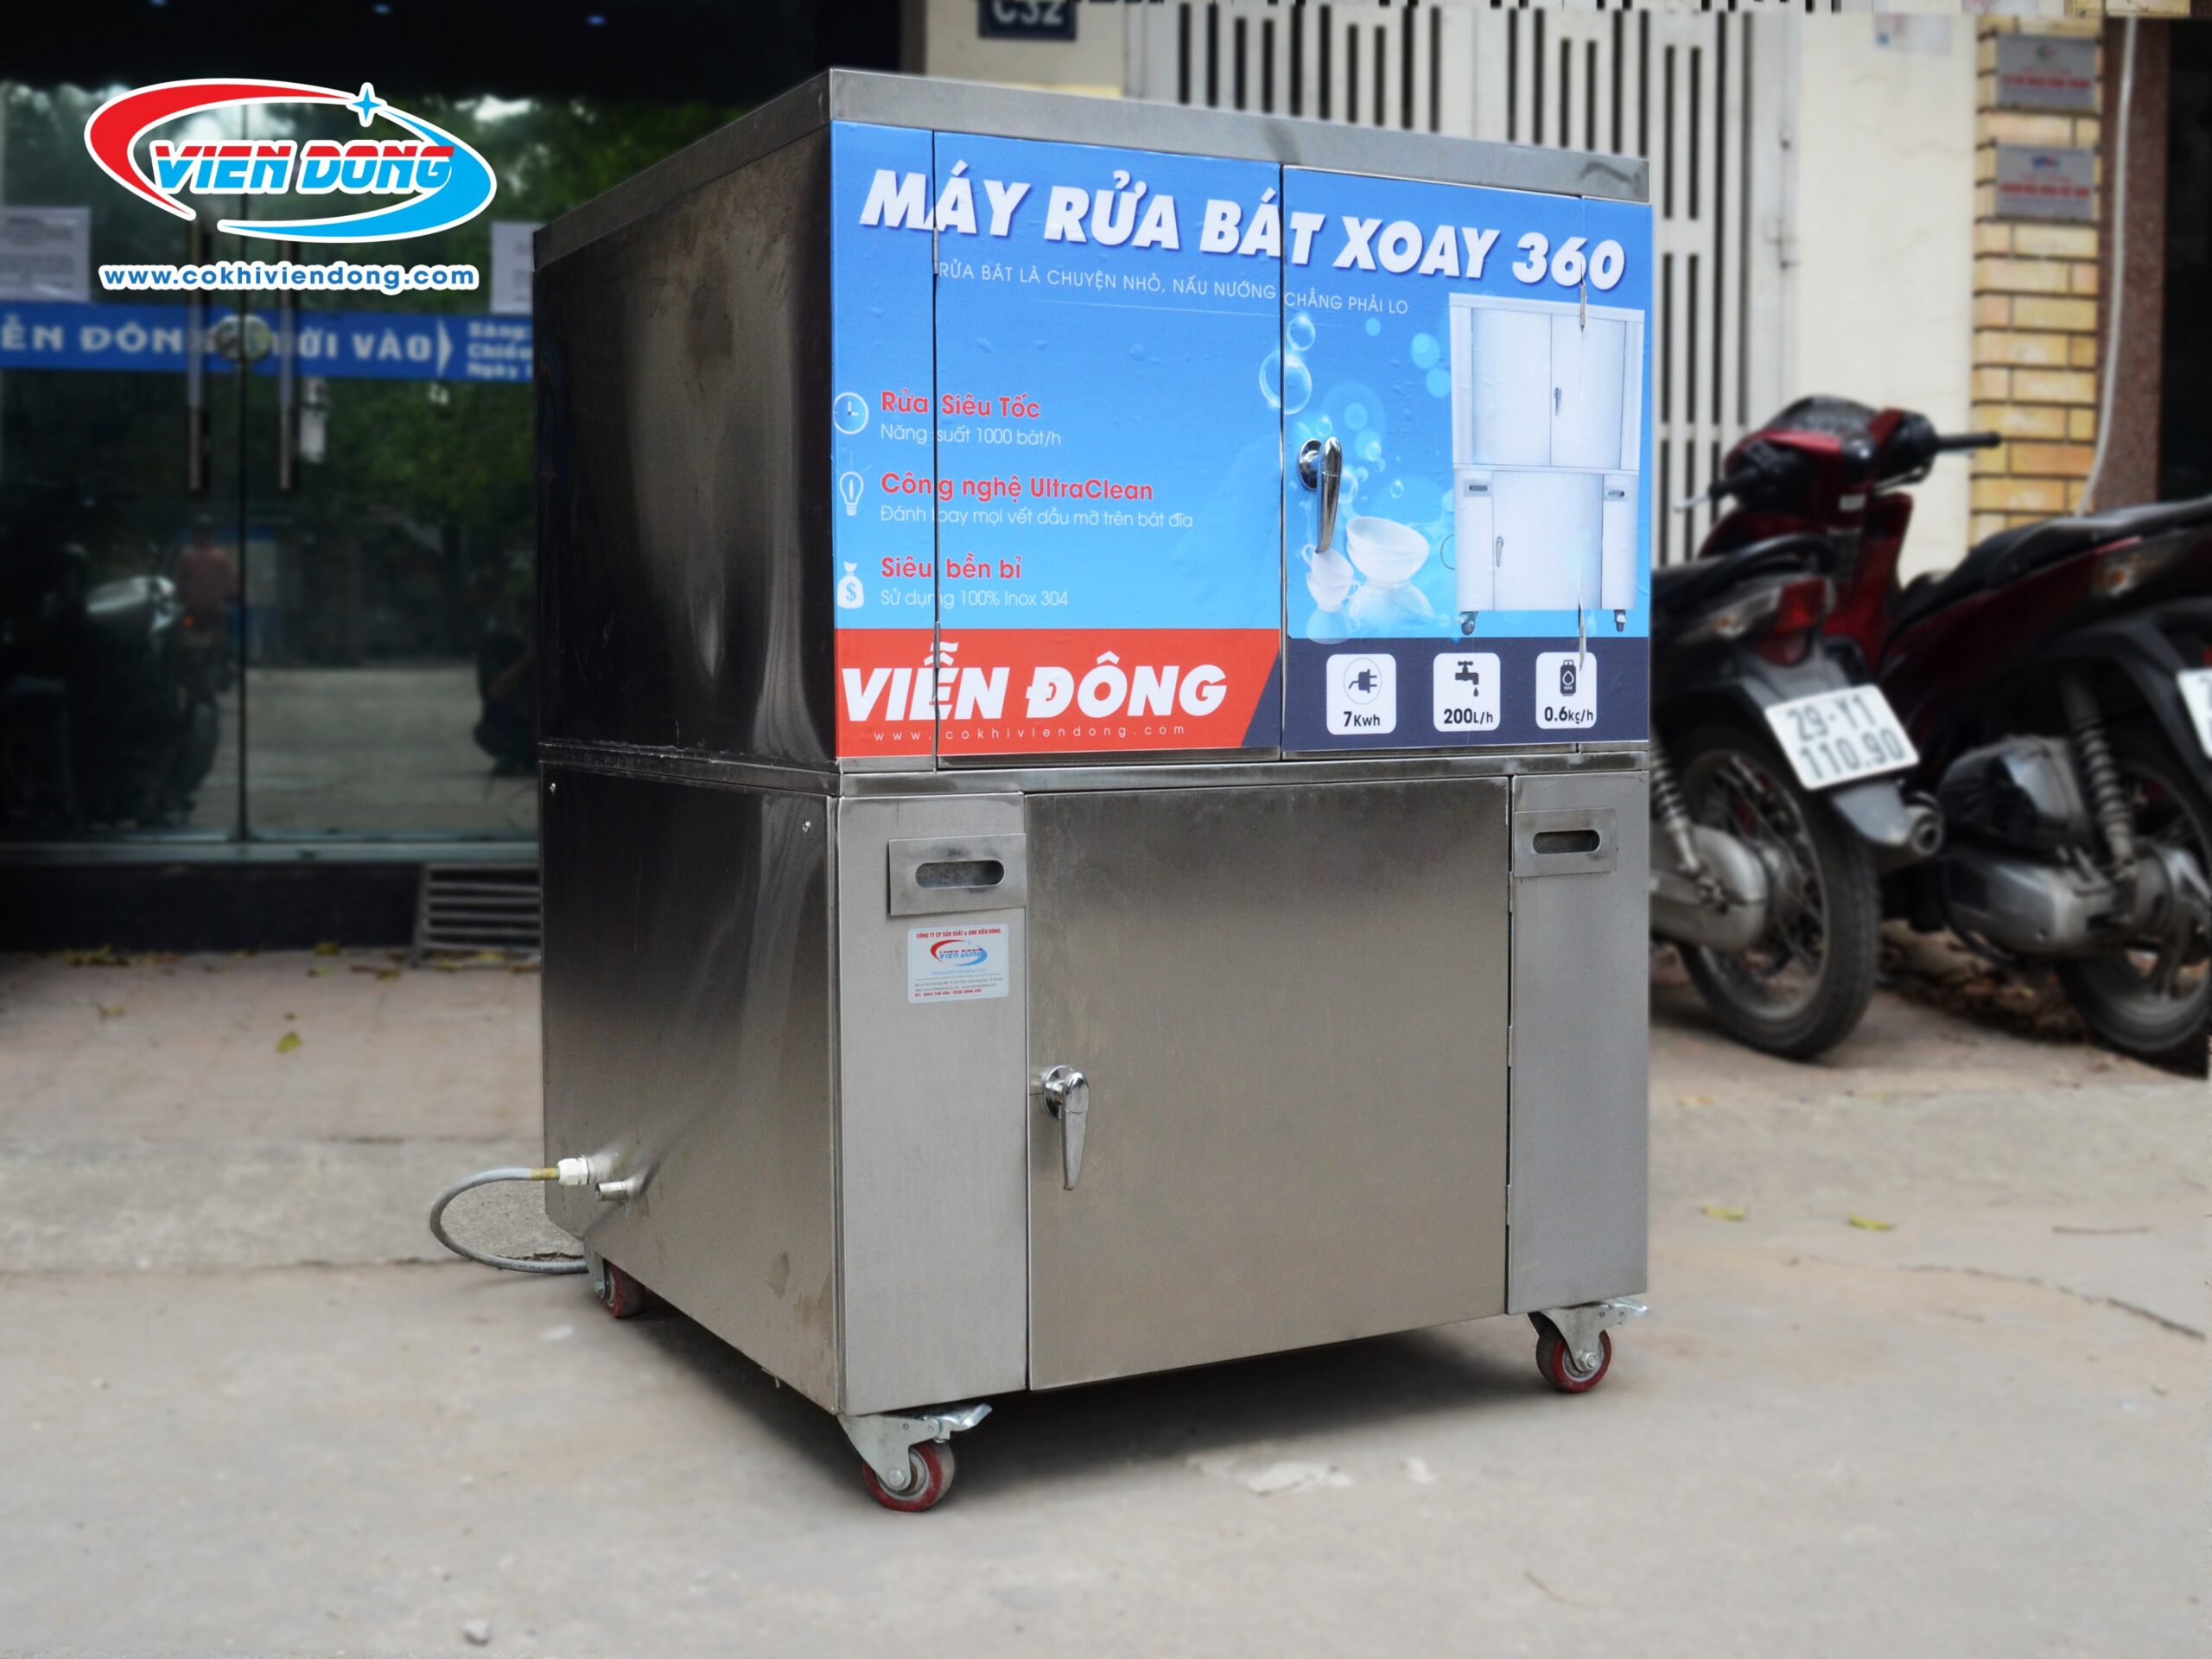 Cách sử dụng máy rửa bát Việt Nam sản xuất